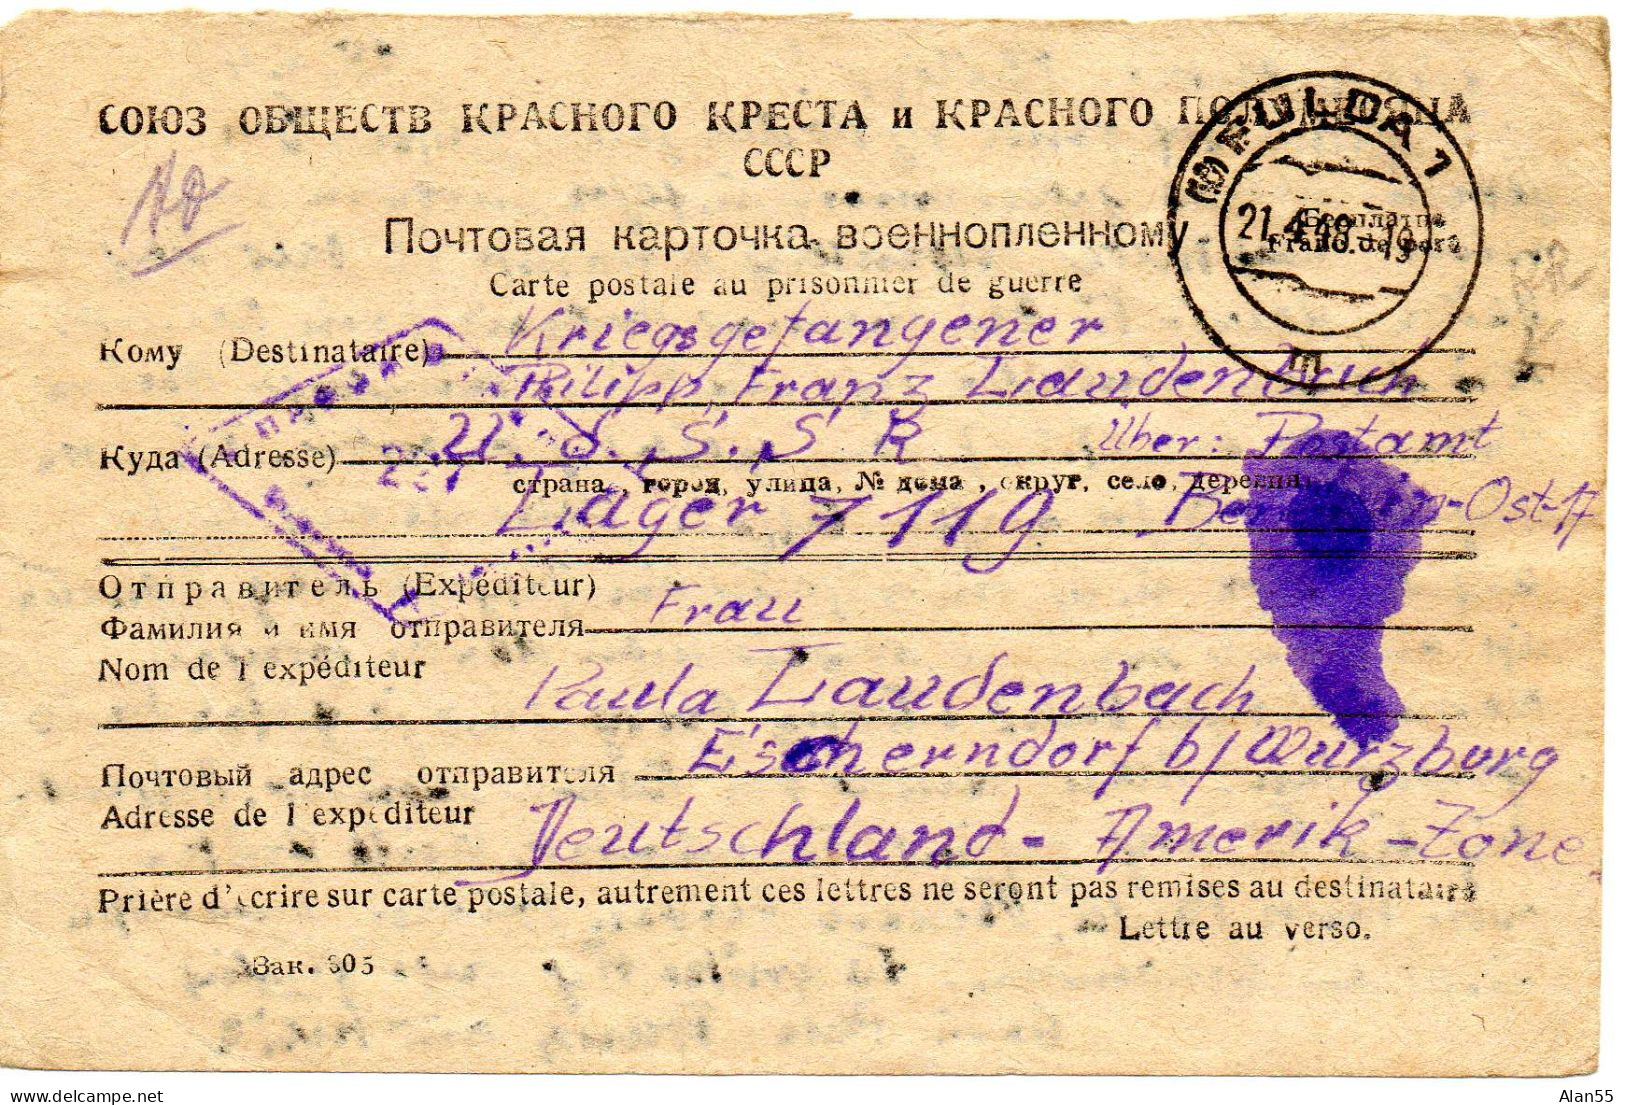 URSS. 1948. CARTE FAMILIALE CROIX-ROUGE. (SENS ALLEMAGNE-URSS). CENSURE - Storia Postale